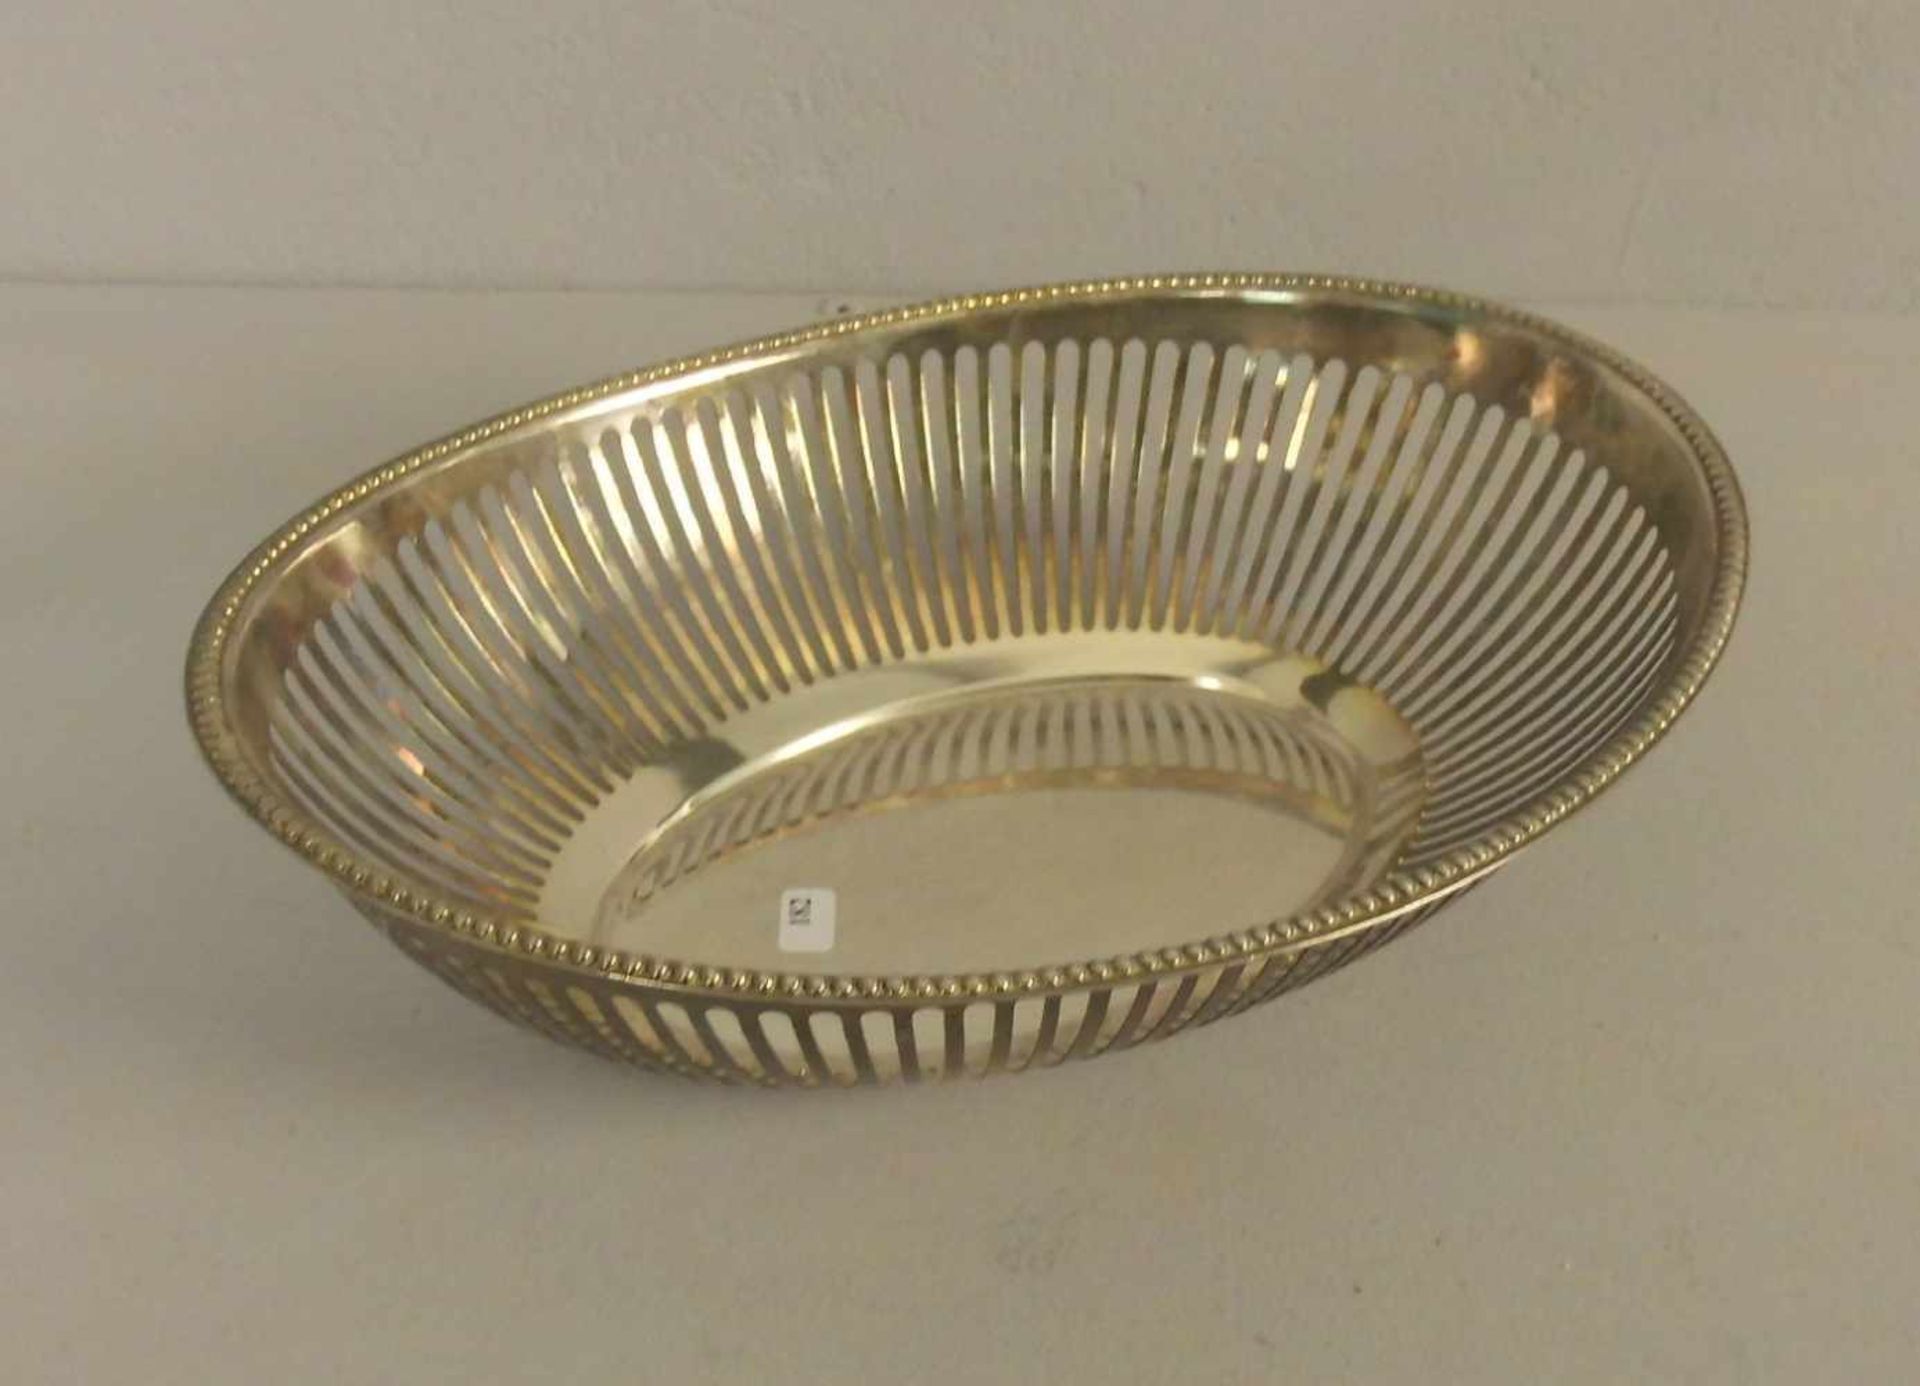 KORBSCHALE / BROTKORB / bowl, versilbertes Metall / plated. Ovale Schale mit durchbrochener - Image 3 of 3